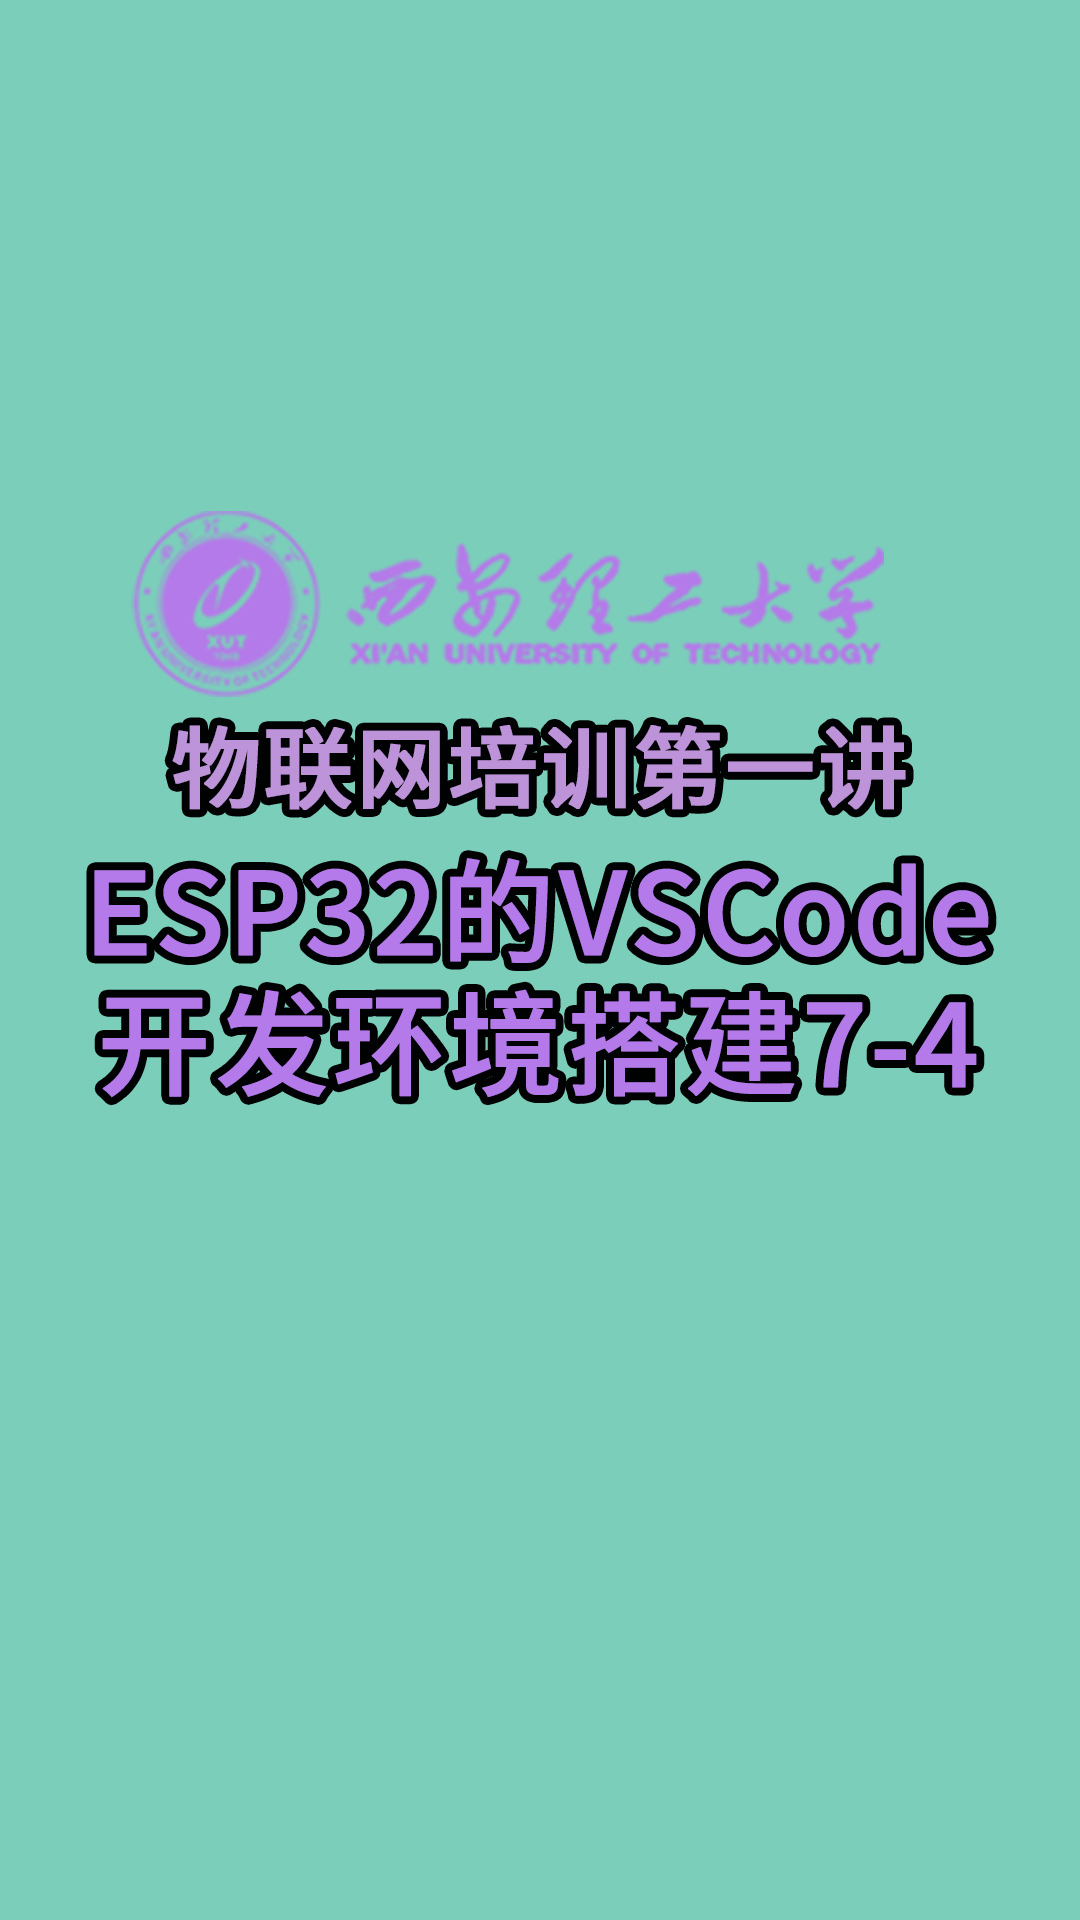 西安理工大学-物联网培训第一讲-ESP32的VSCode开发环境搭建7-4#物联网 